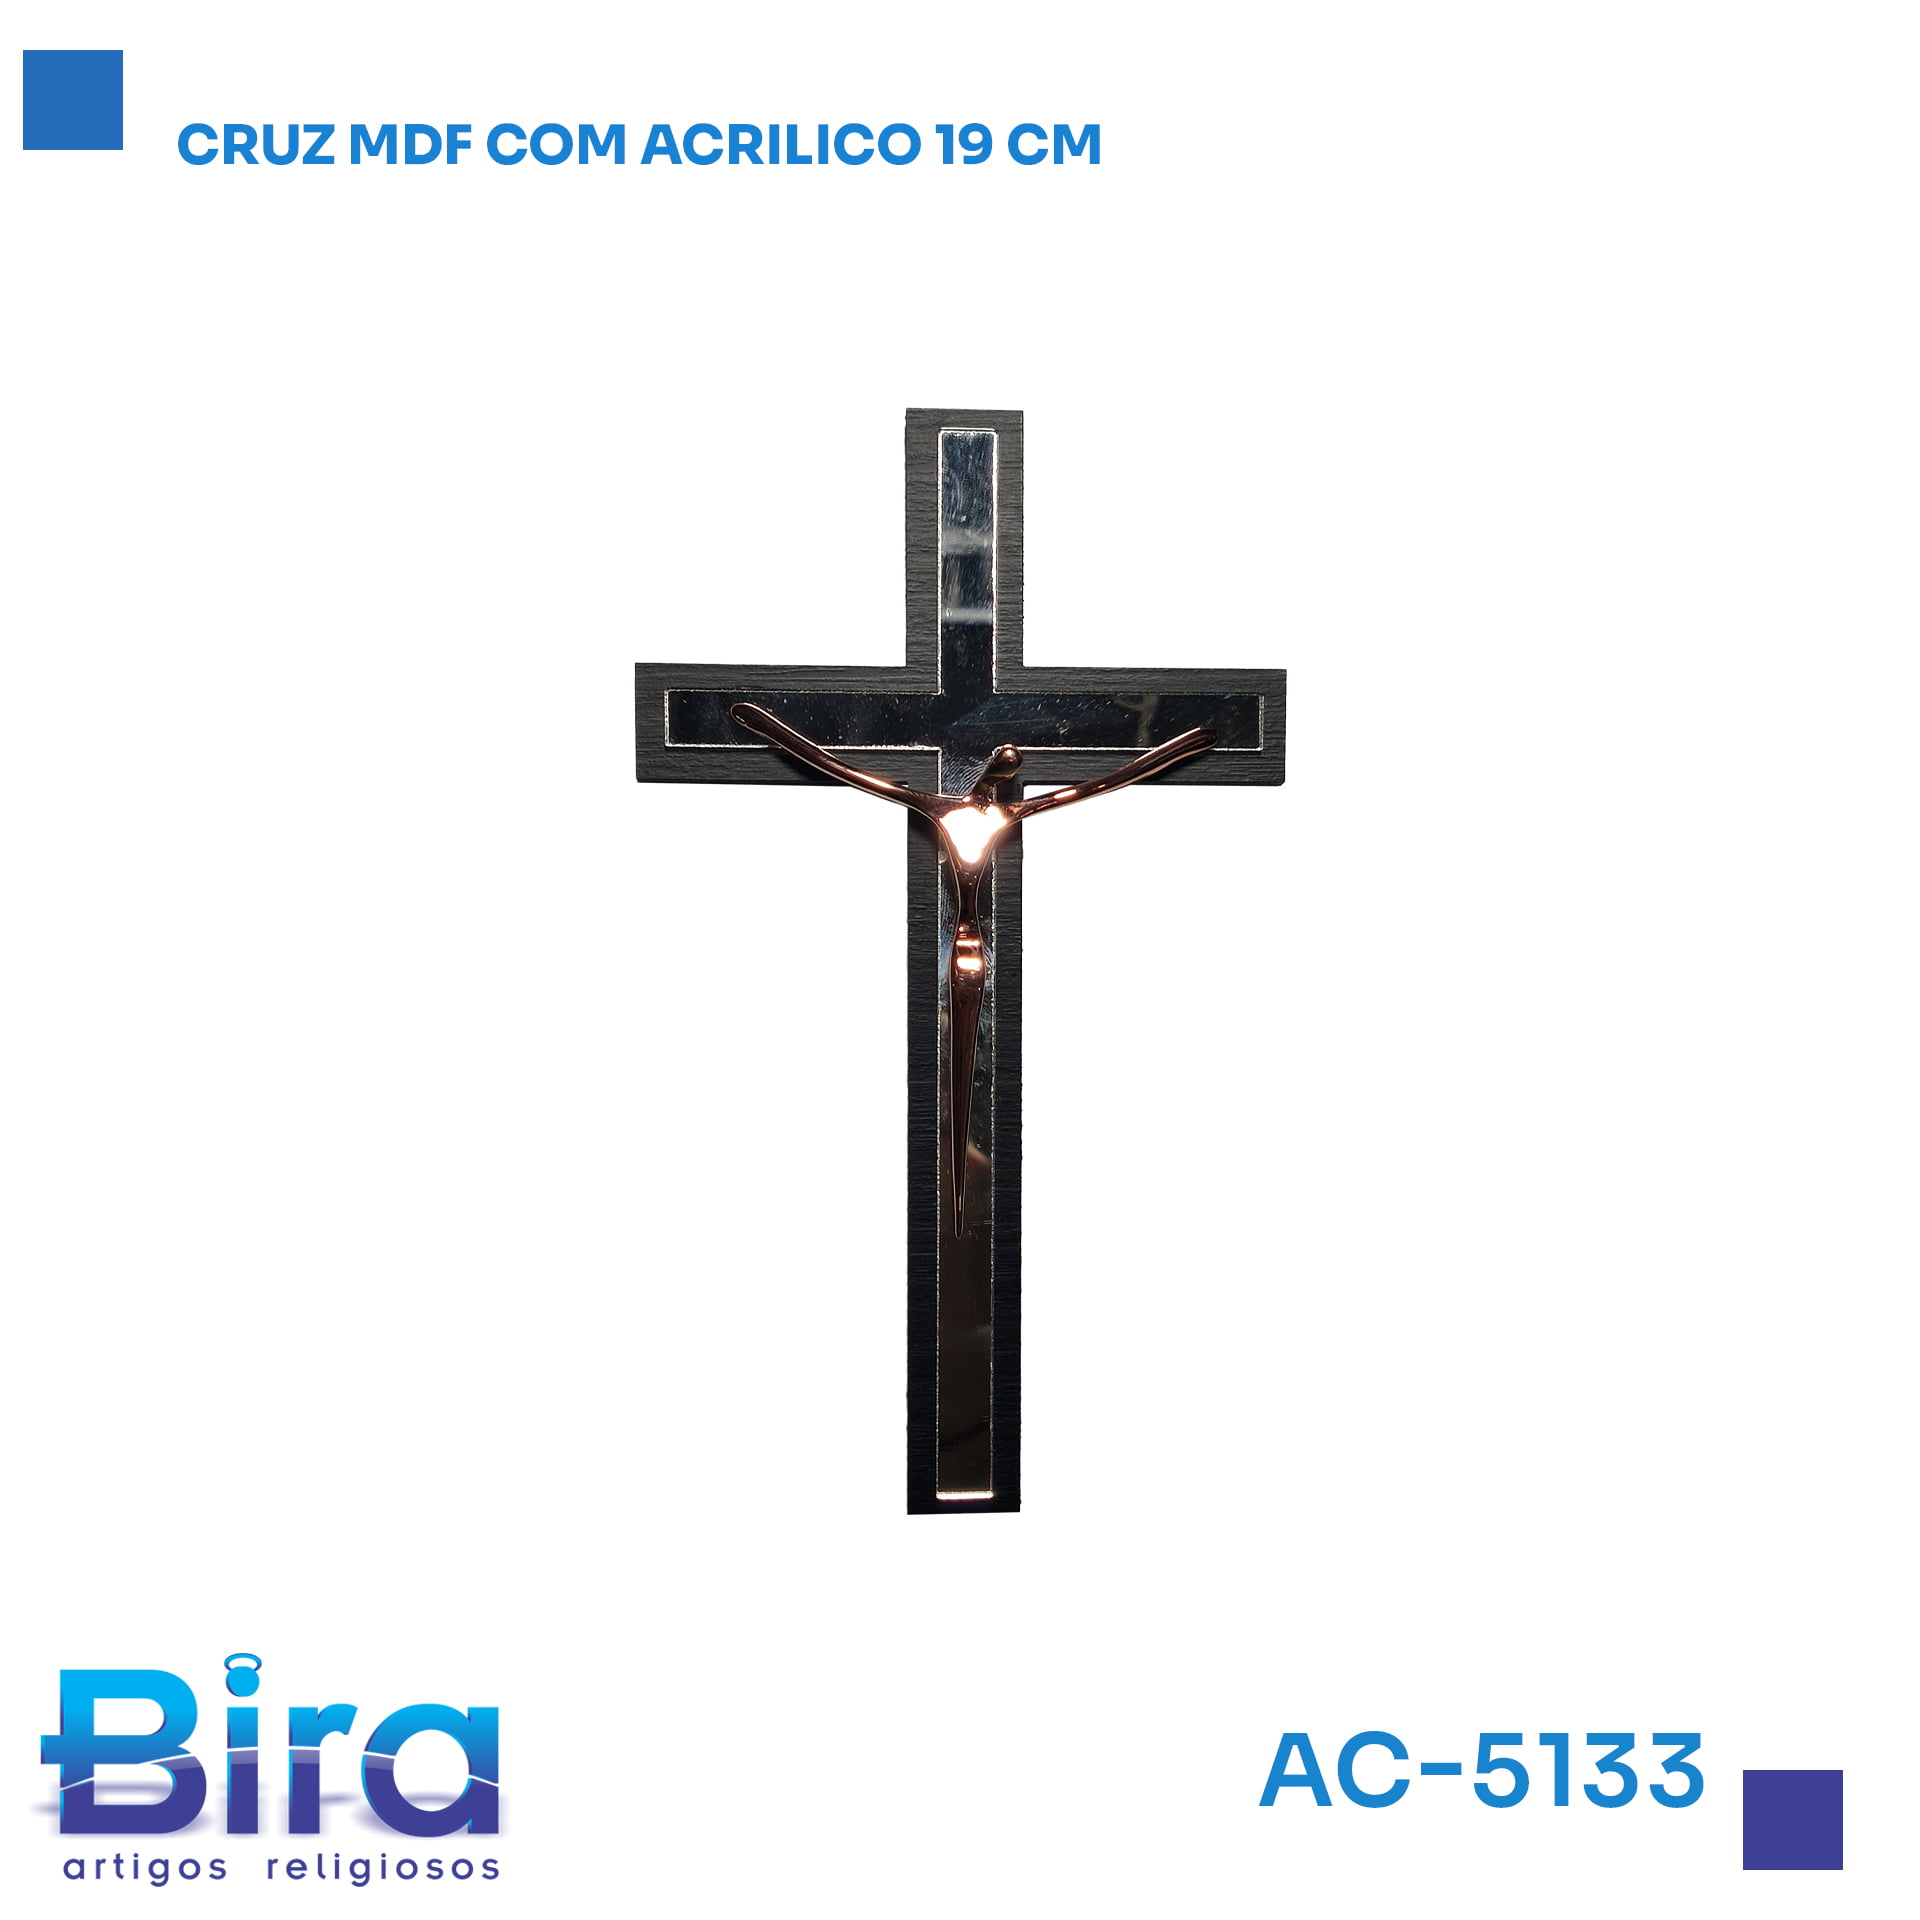 Bira Artigos Religiosos - CRUZ MDF COM ACRILICO 19CM  Cód.: AC-5133